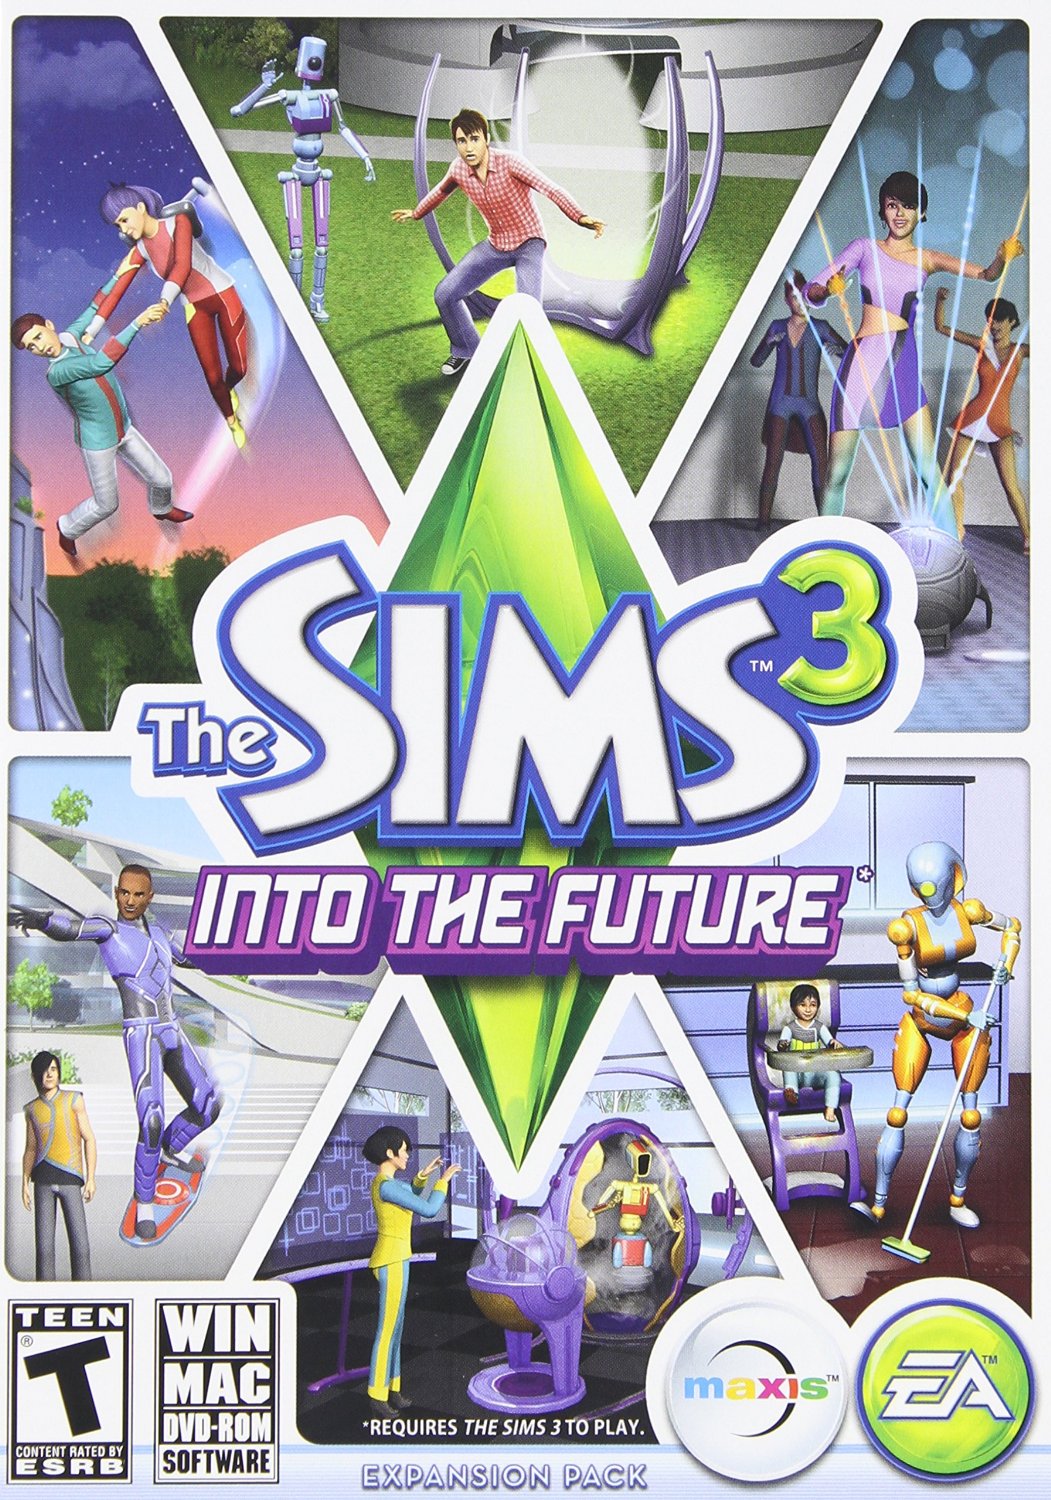 Sims gratis para pc